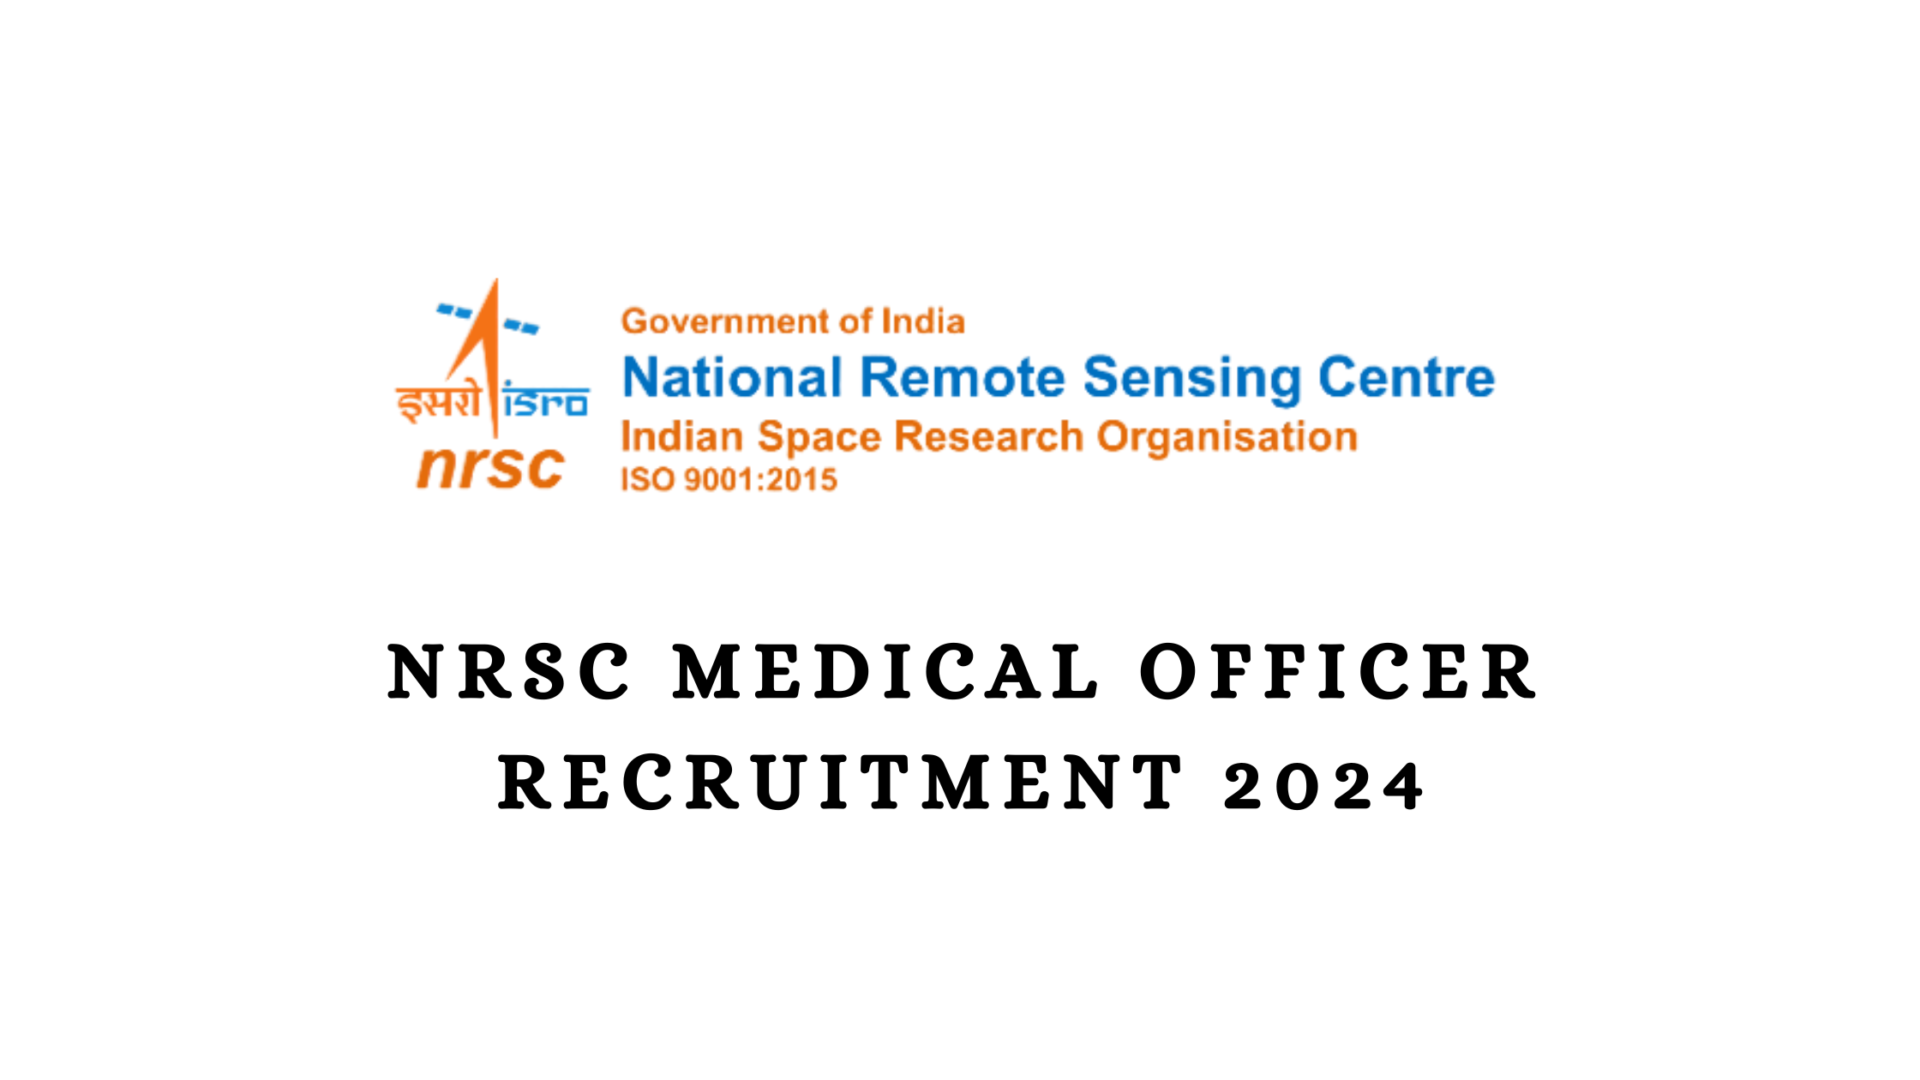 NRSC Medical Officer Recruitment 2024